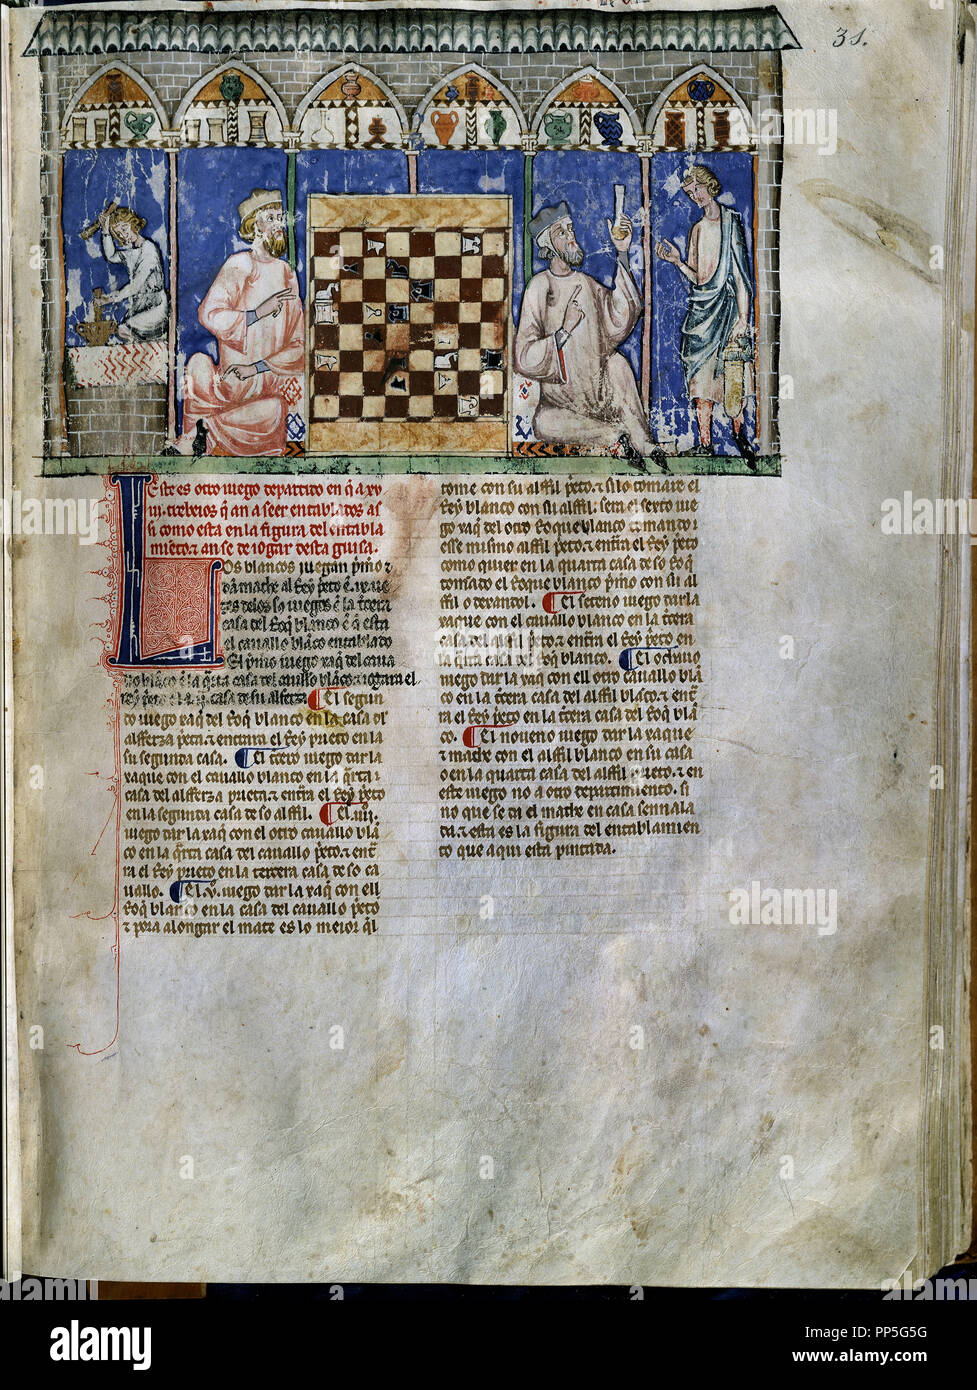 Libro de juegos o libros de ajedrez, dados y tablas - 1283 - Hoja 31R -  partida de ajedrez en una farmacia - gótica manuscrito. Autor: Alfonso X de  Castilla. Ubicación: Monasterio-BIBLIOTECA-COLECCION.